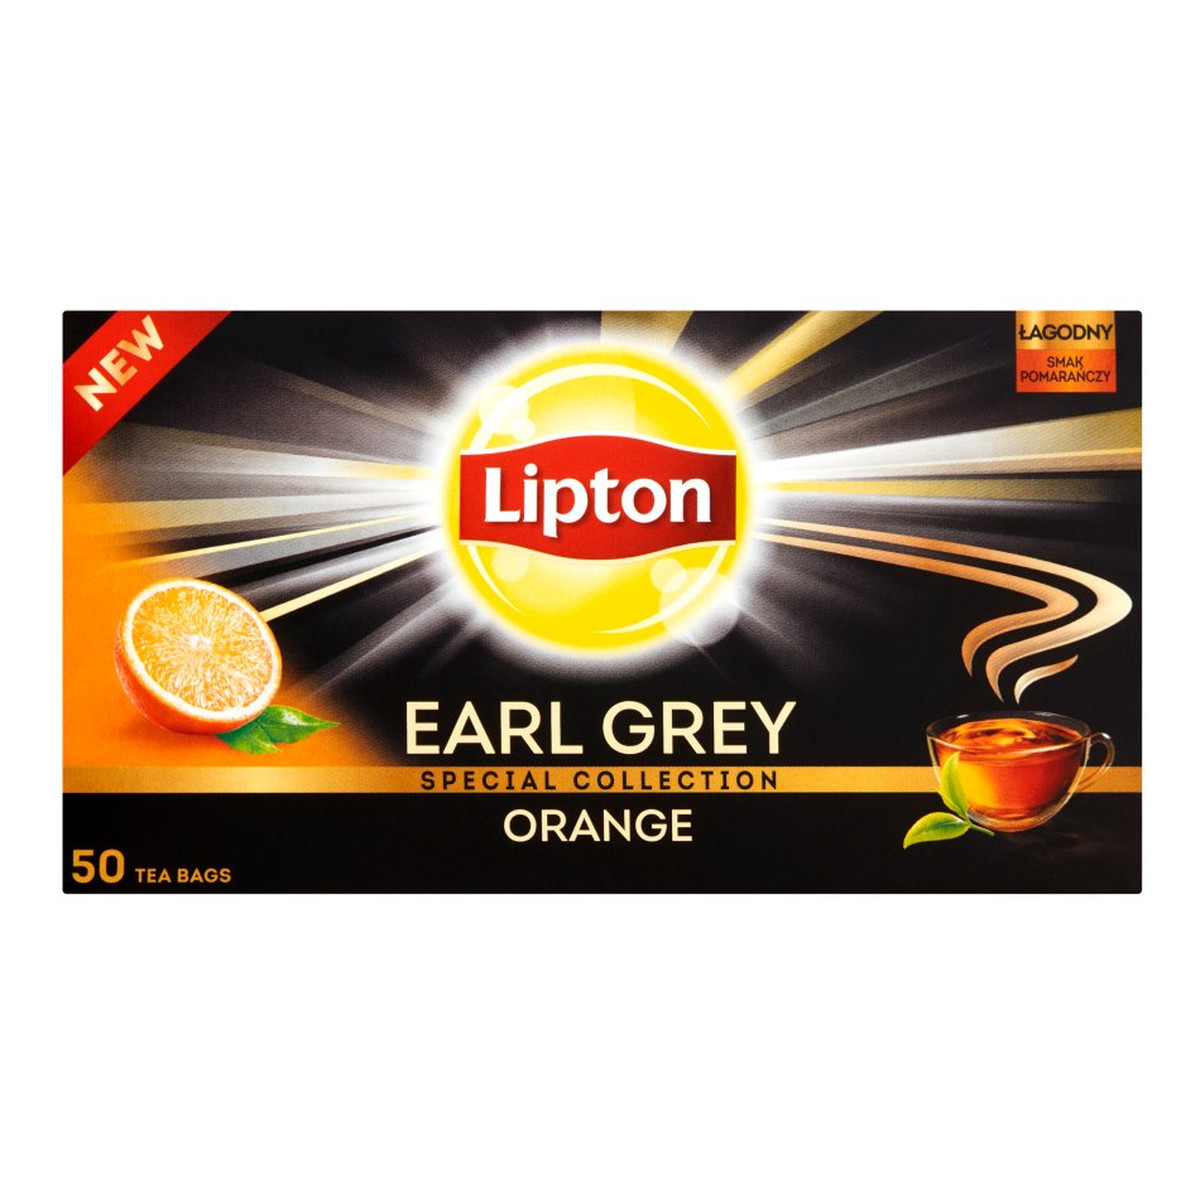 Lipton Earl Grey Orange herbata czarna Pomarańcza 50 torebek 70g